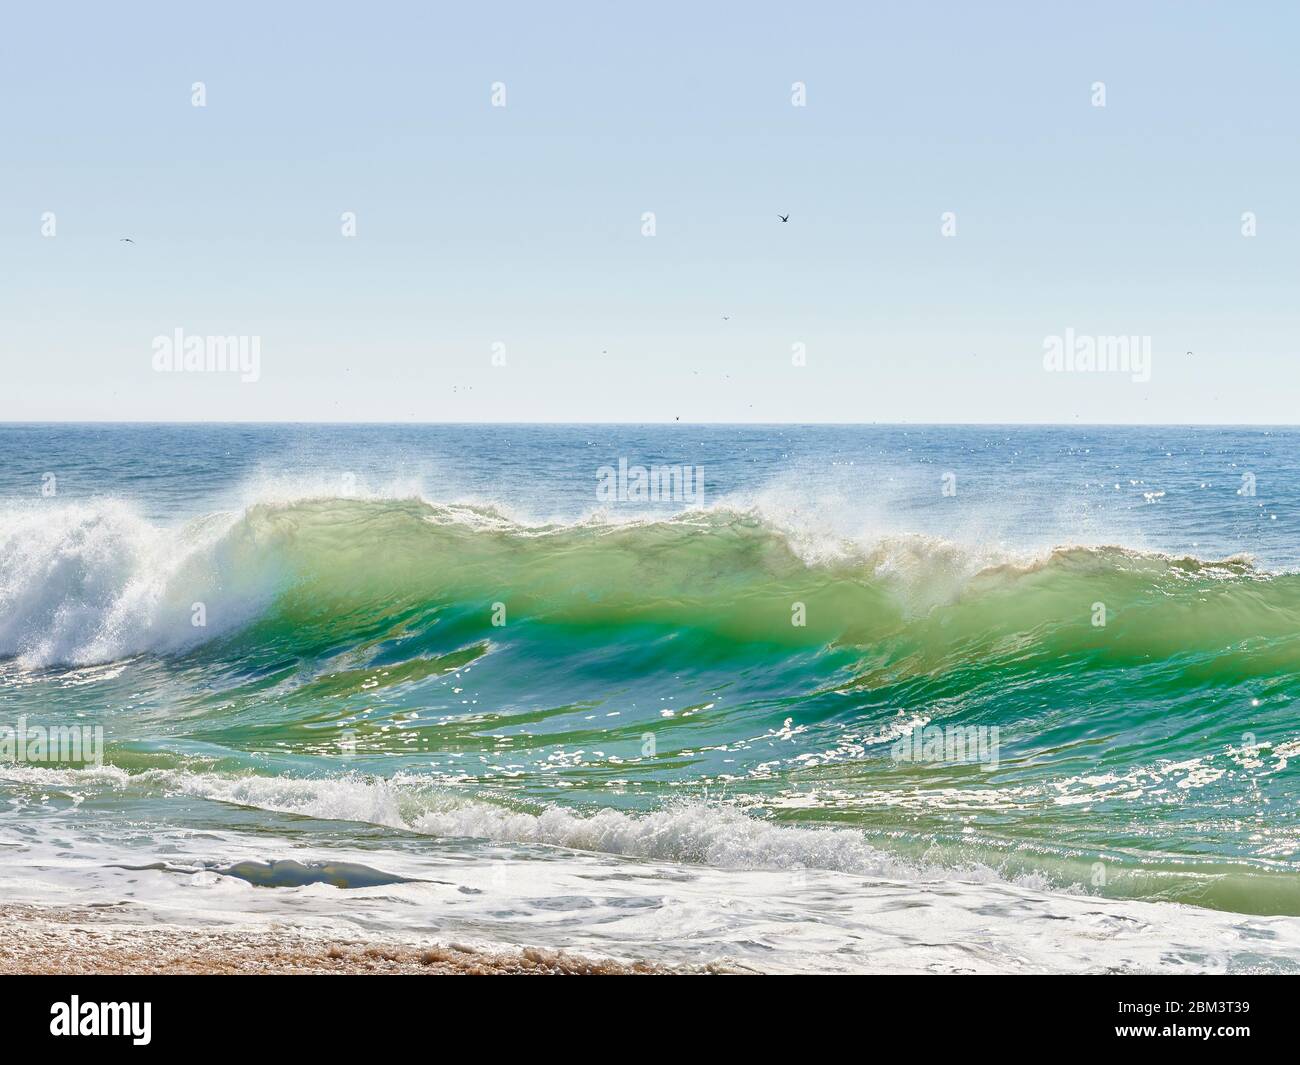 onde verdi dell'atlantico che si schiantano sulla spiaggia a nord della spiaggia, Nazaré Foto Stock